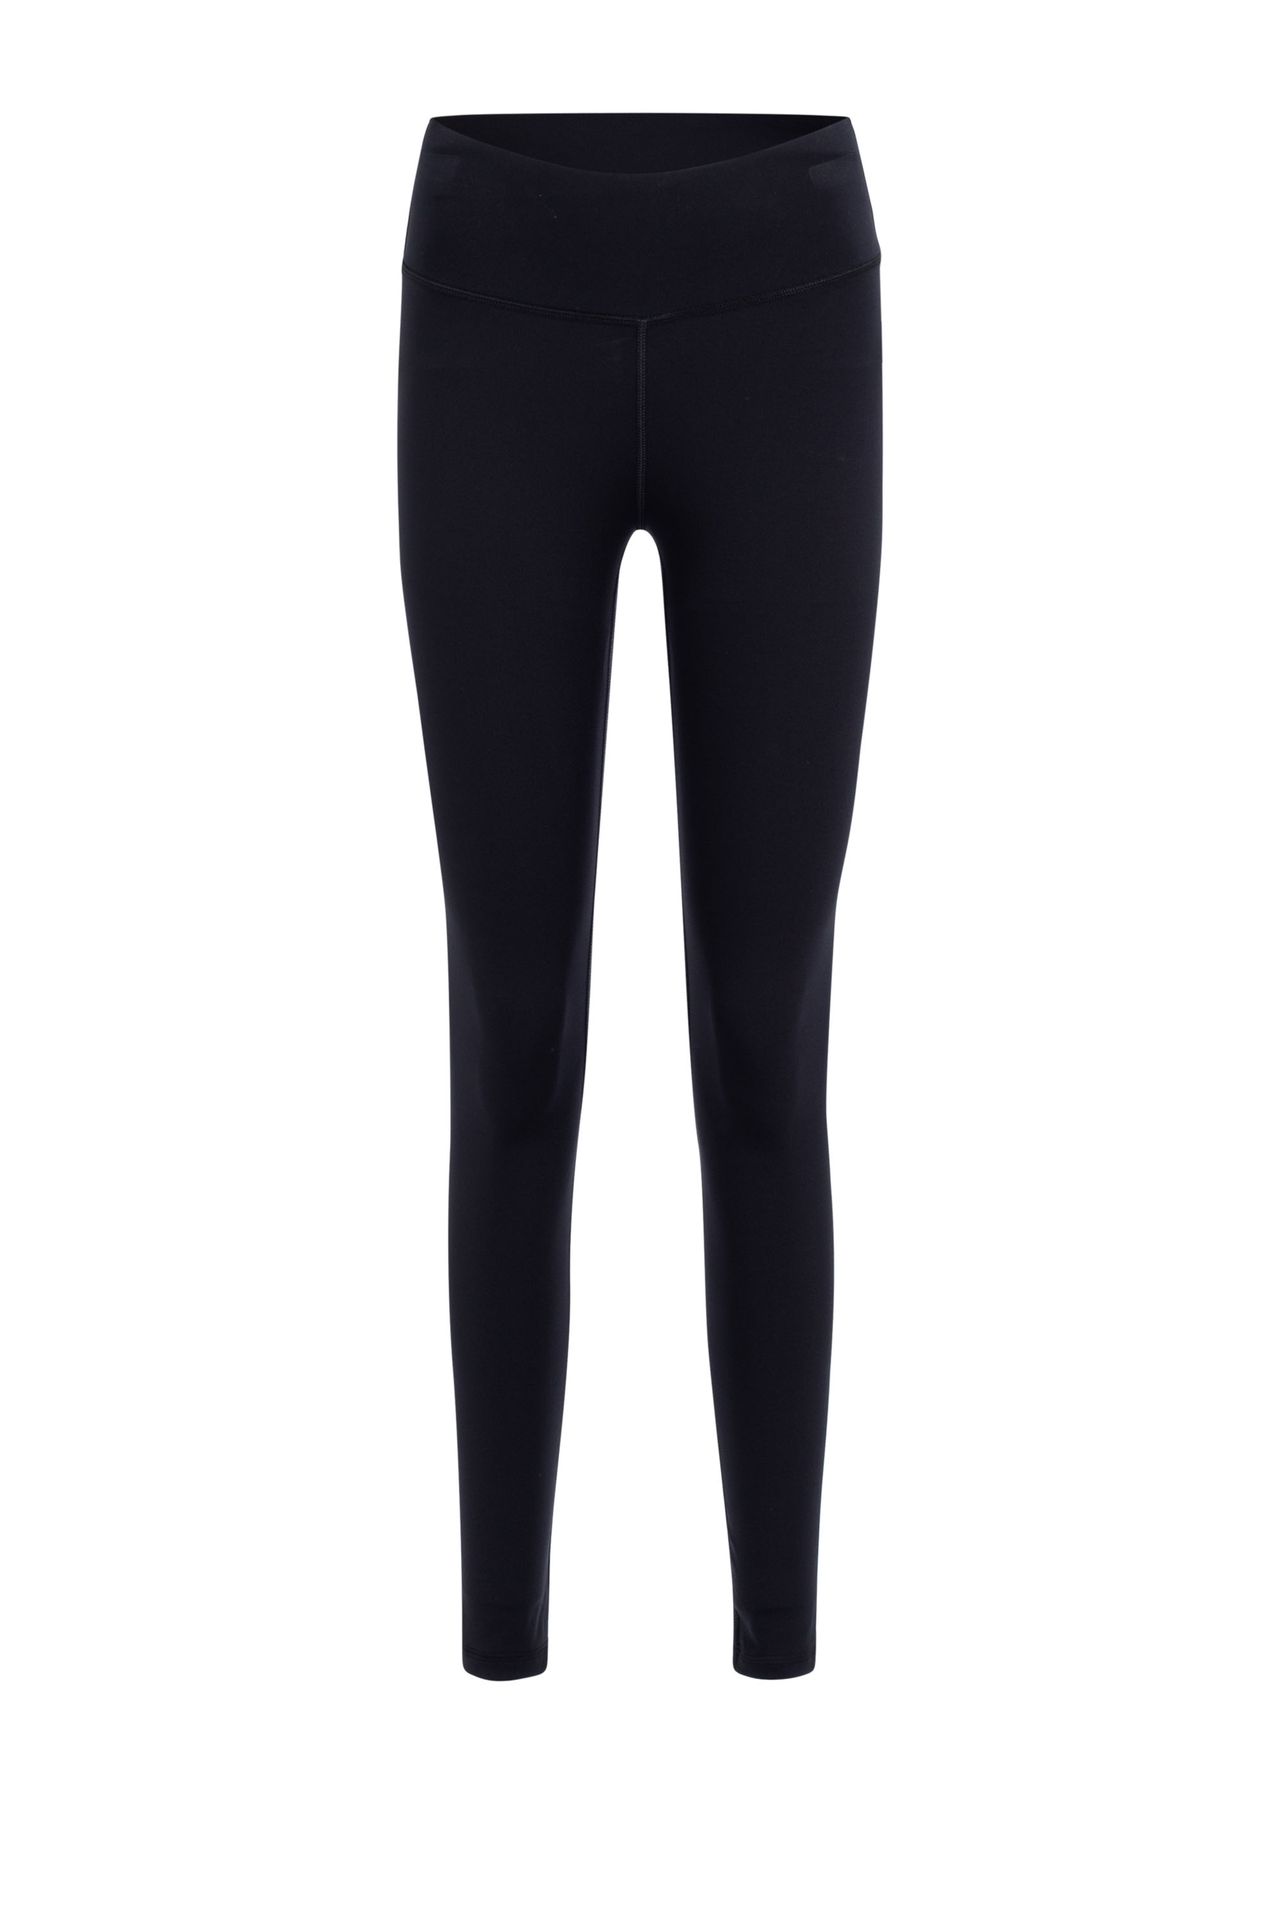 Norah Legging - Activewear black 210945-001-42